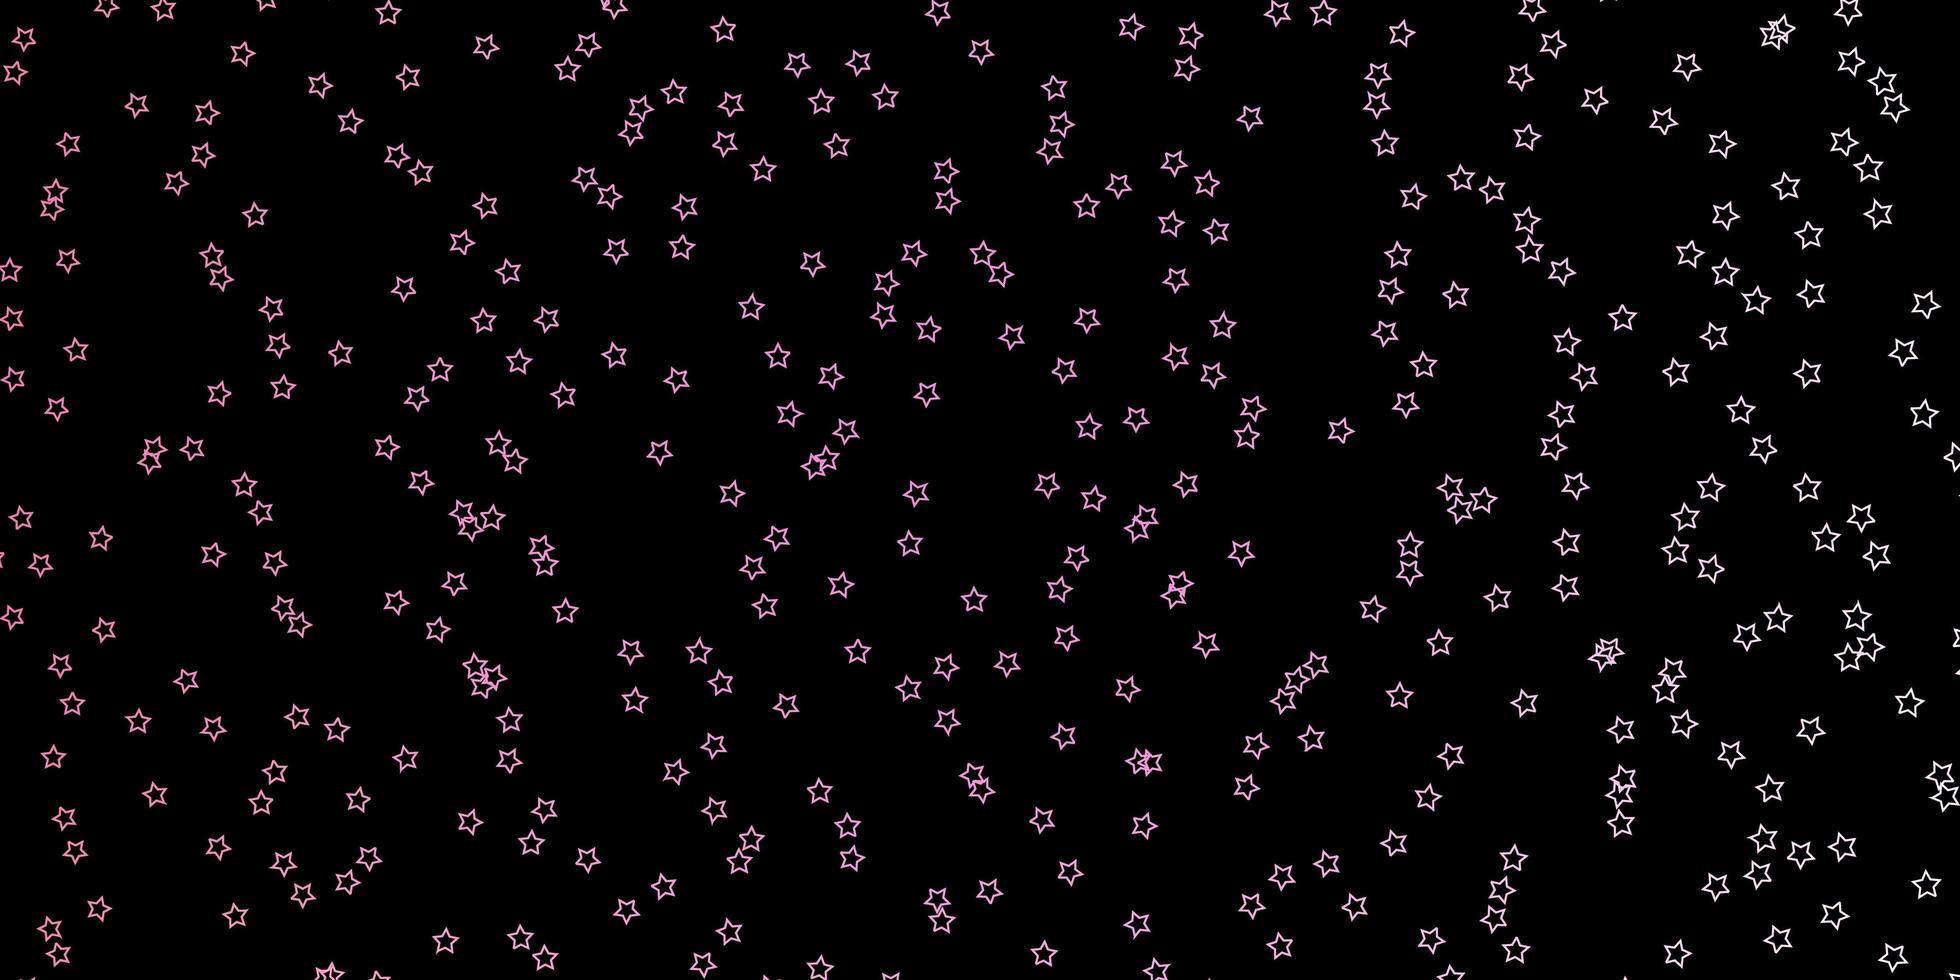 fond de vecteur rose foncé avec des étoiles colorées illustration abstraite géométrique moderne avec motif d'étoiles pour les livrets publicitaires du nouvel an